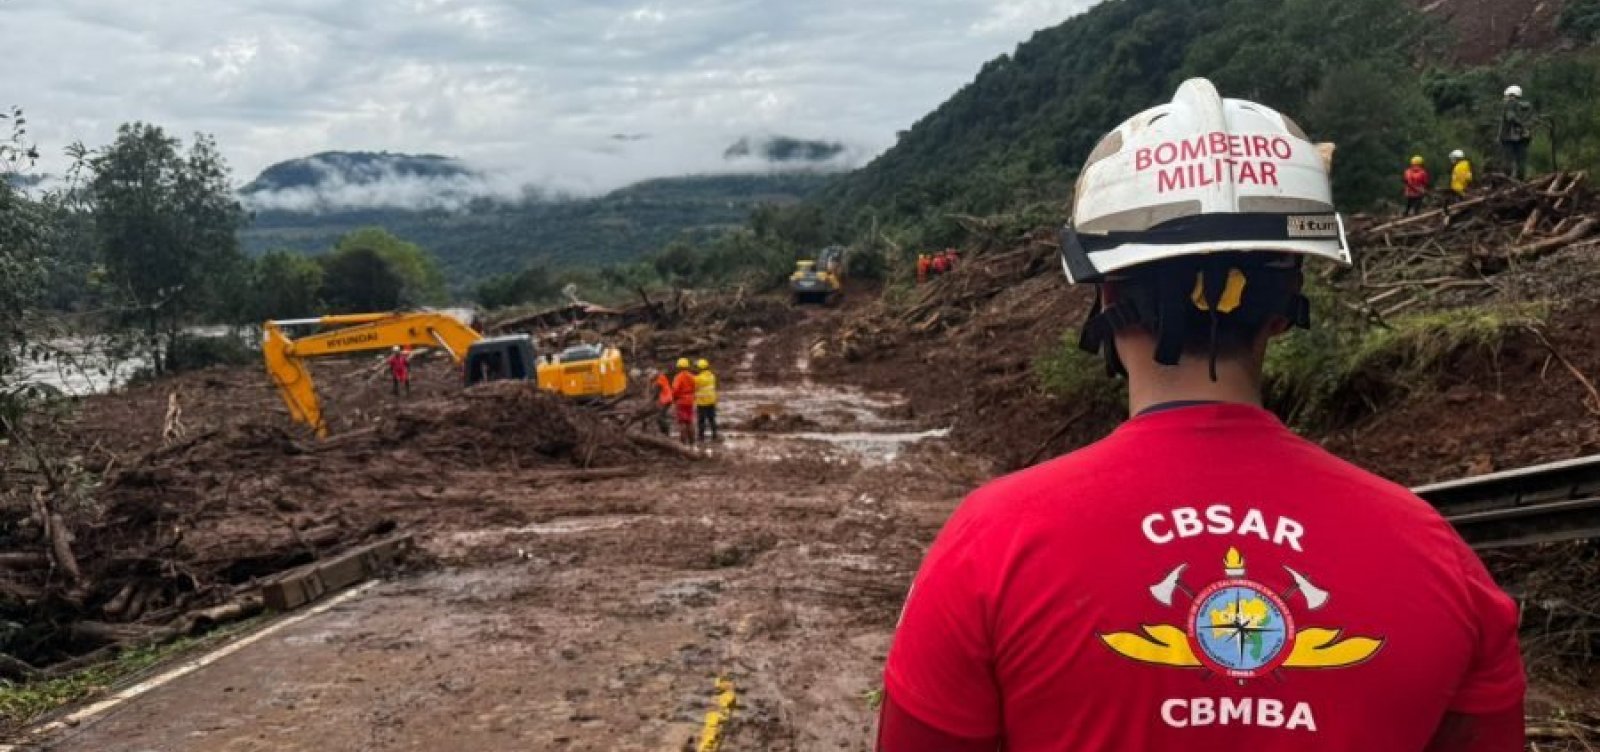 Bombeiros da Bahia seguem nas buscas por desaparecidos no Rio Grande do Sul